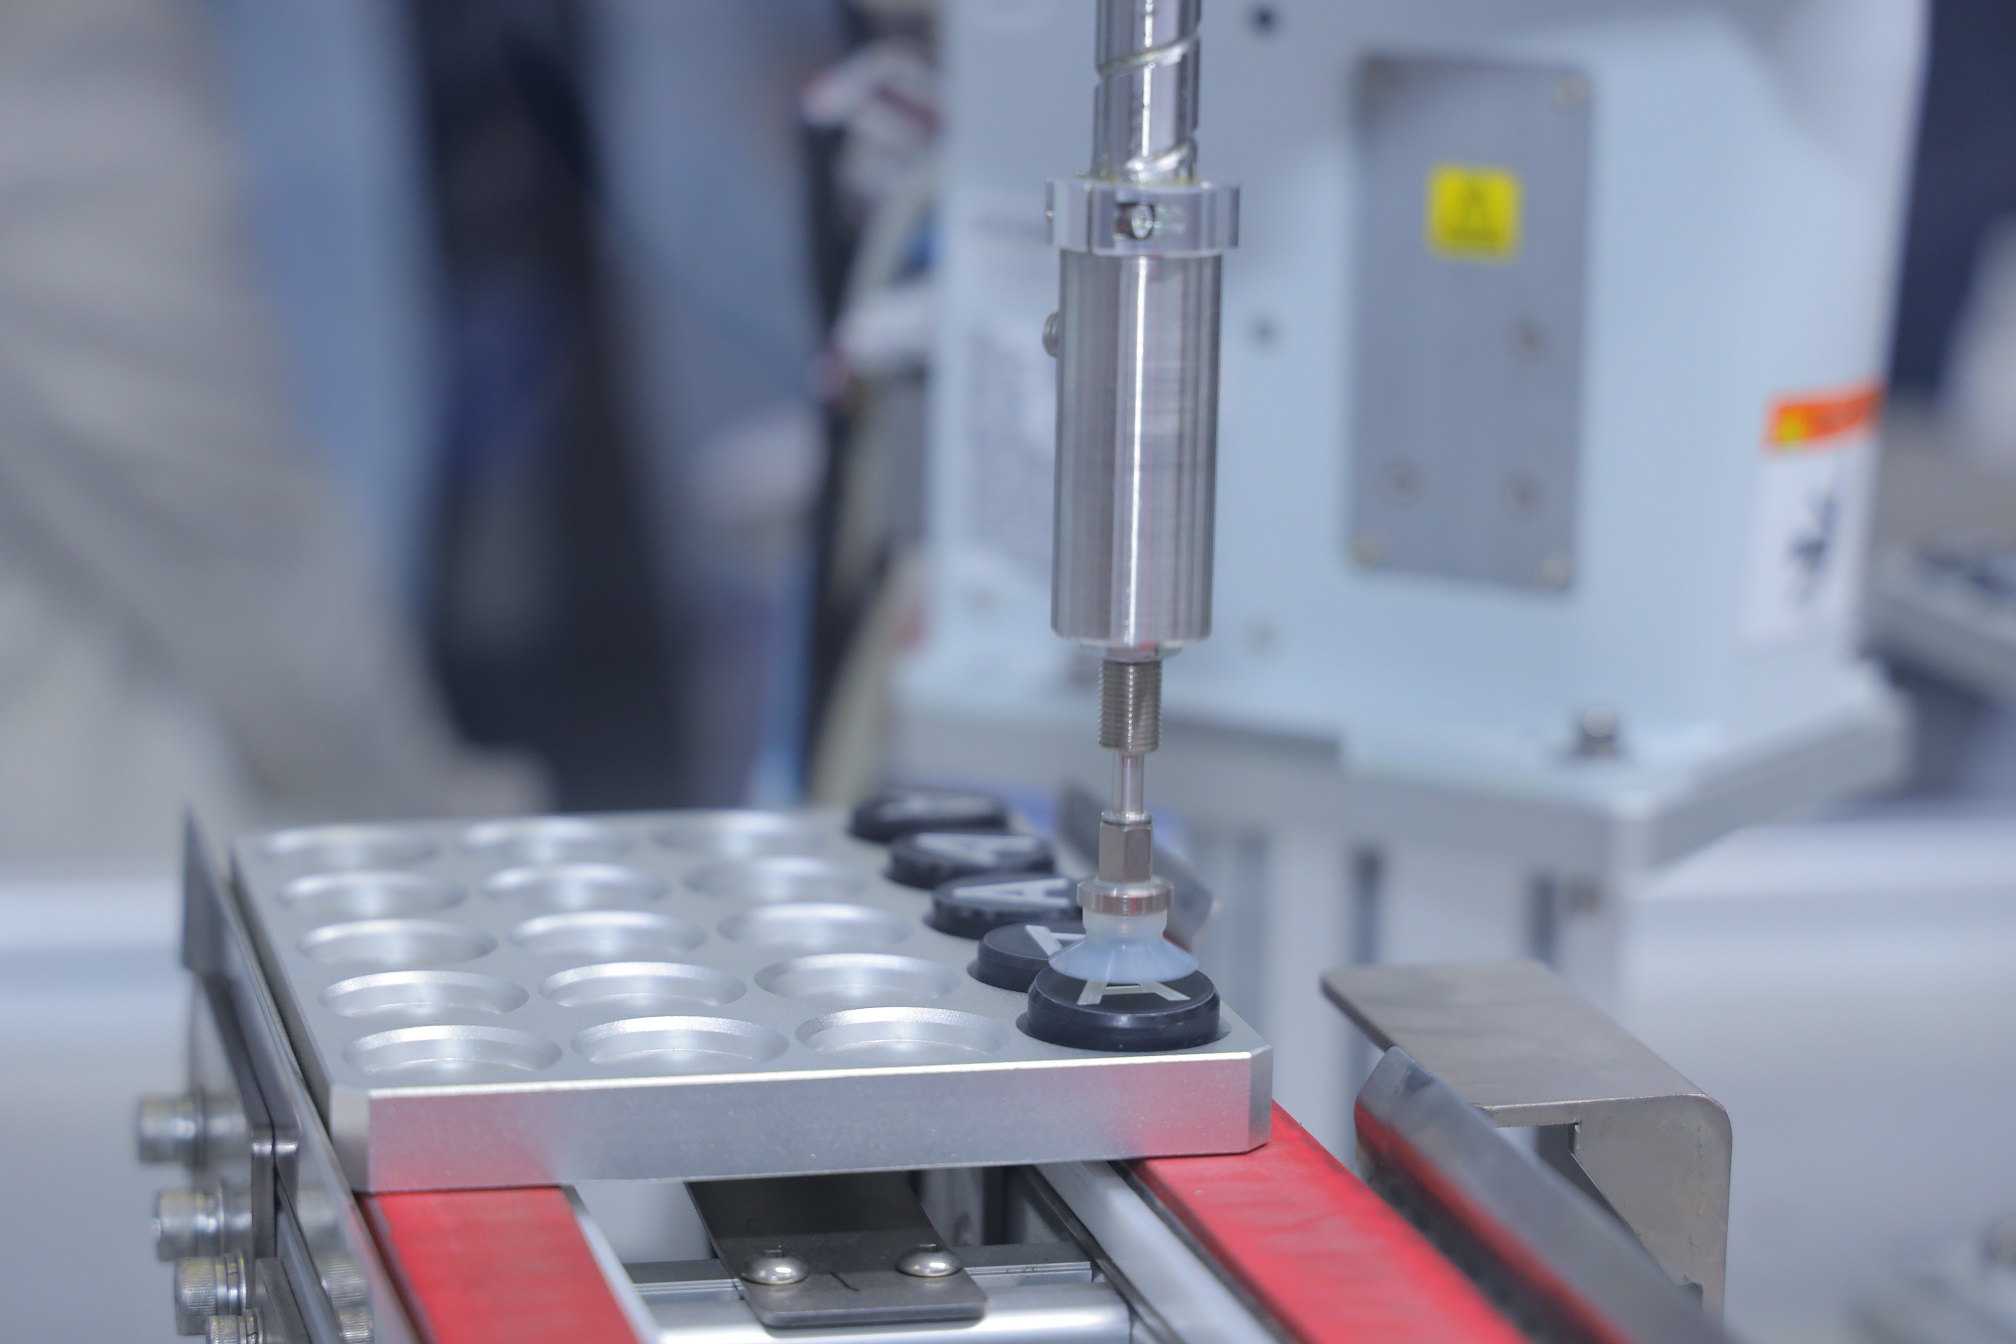 Epson giới thiệu robot công nghiệp ở METALEX - 4. Robot T3 trinh dien